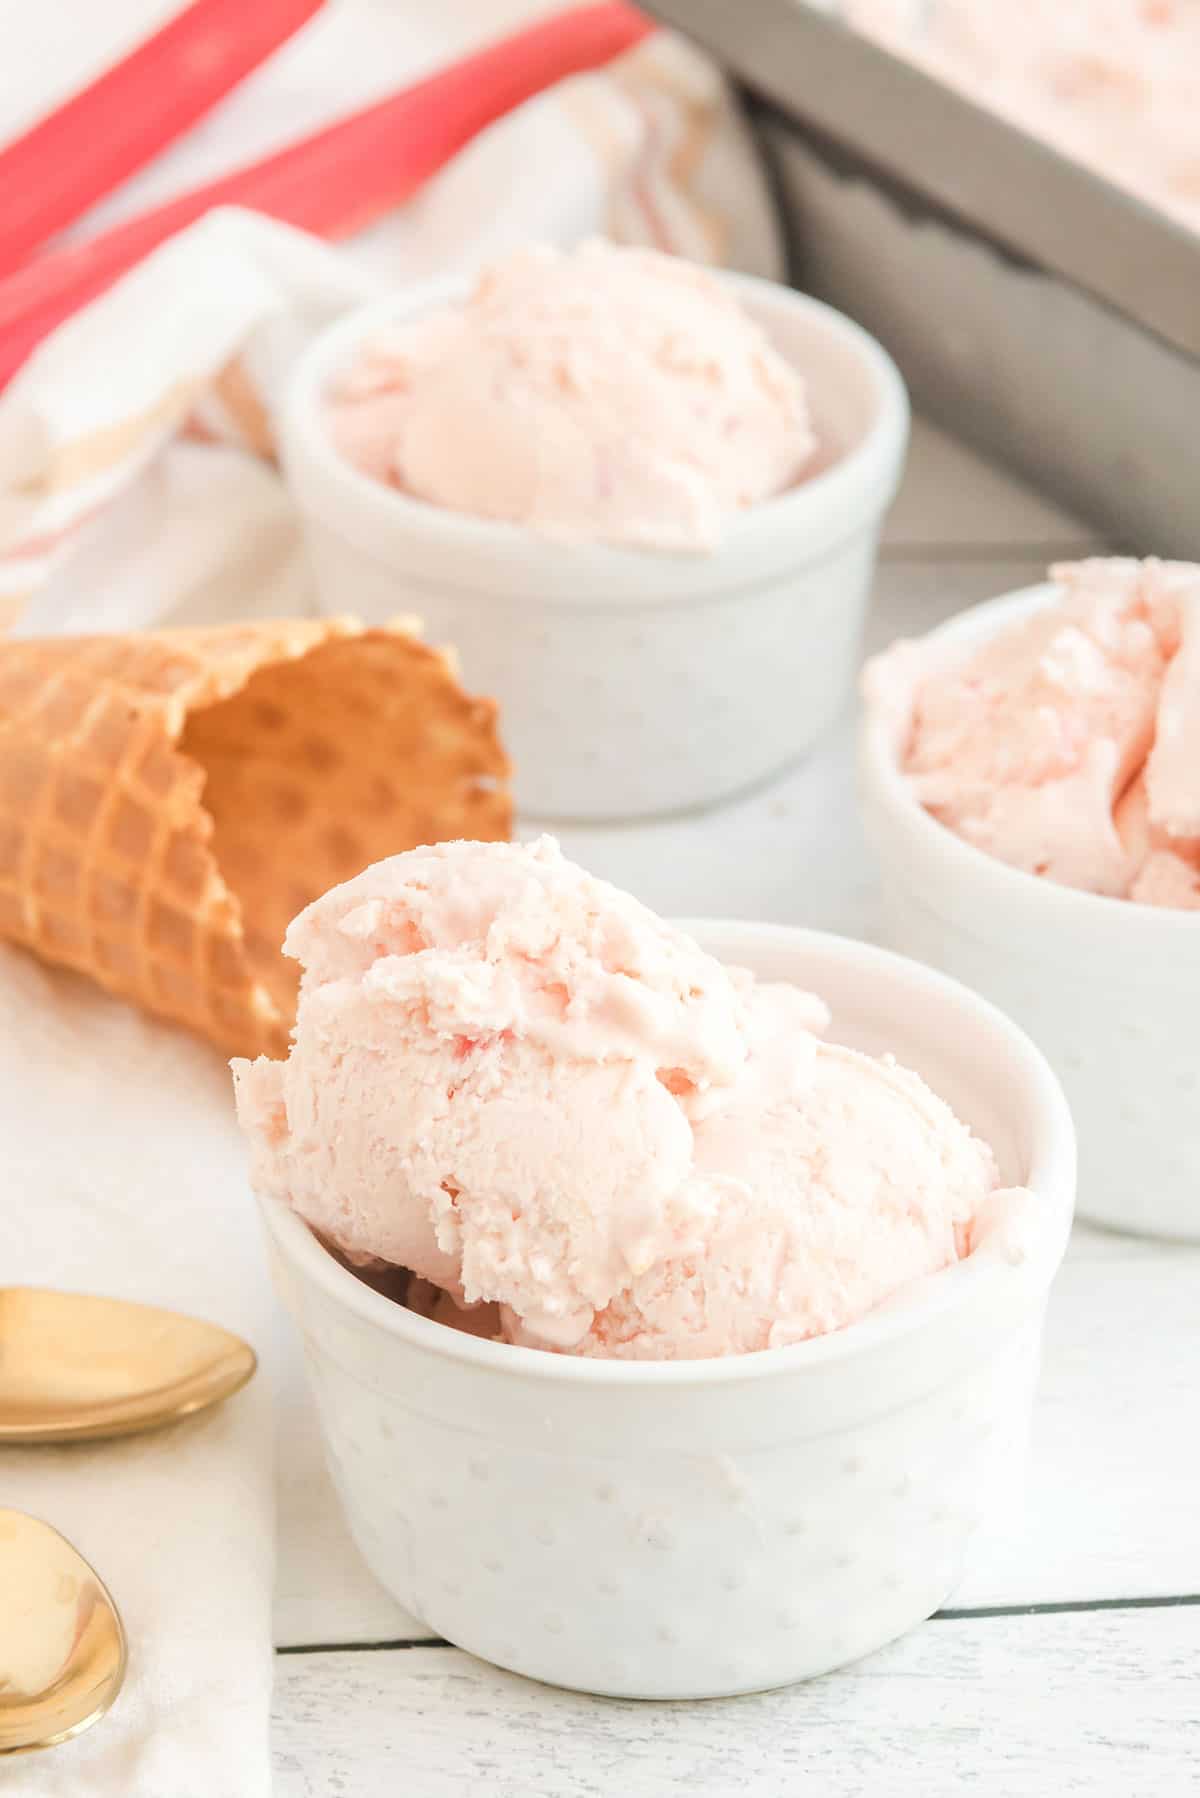 rhubarb ice cream in small white ramakins